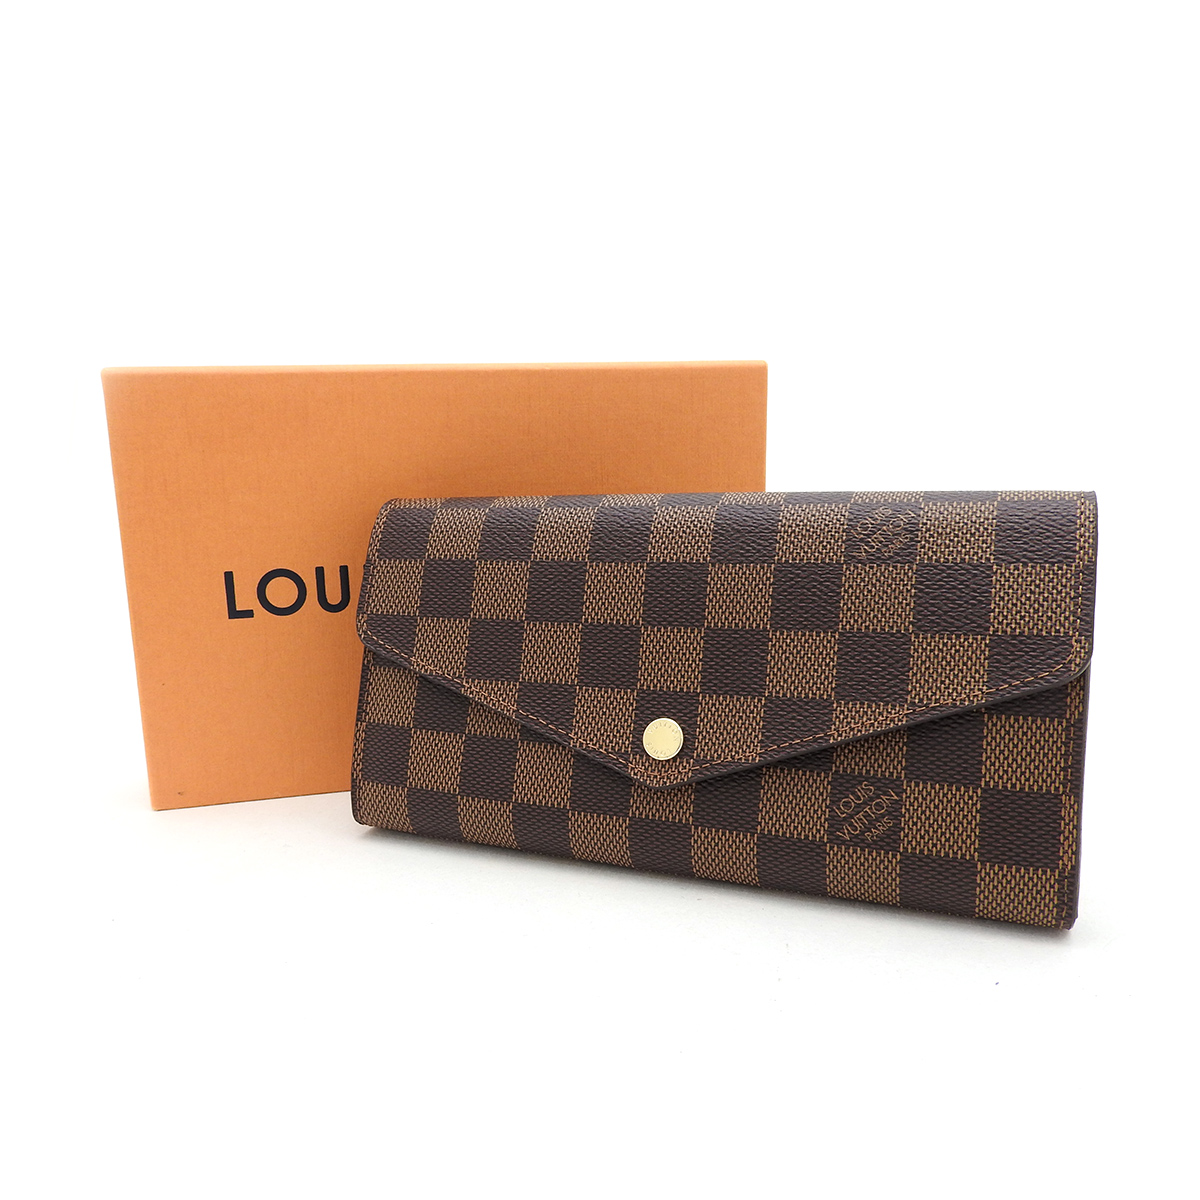 ルイヴィトン(Louis Vuitton) ポルトフォイユ・サラ N63209 財布 SAランク ブラウン